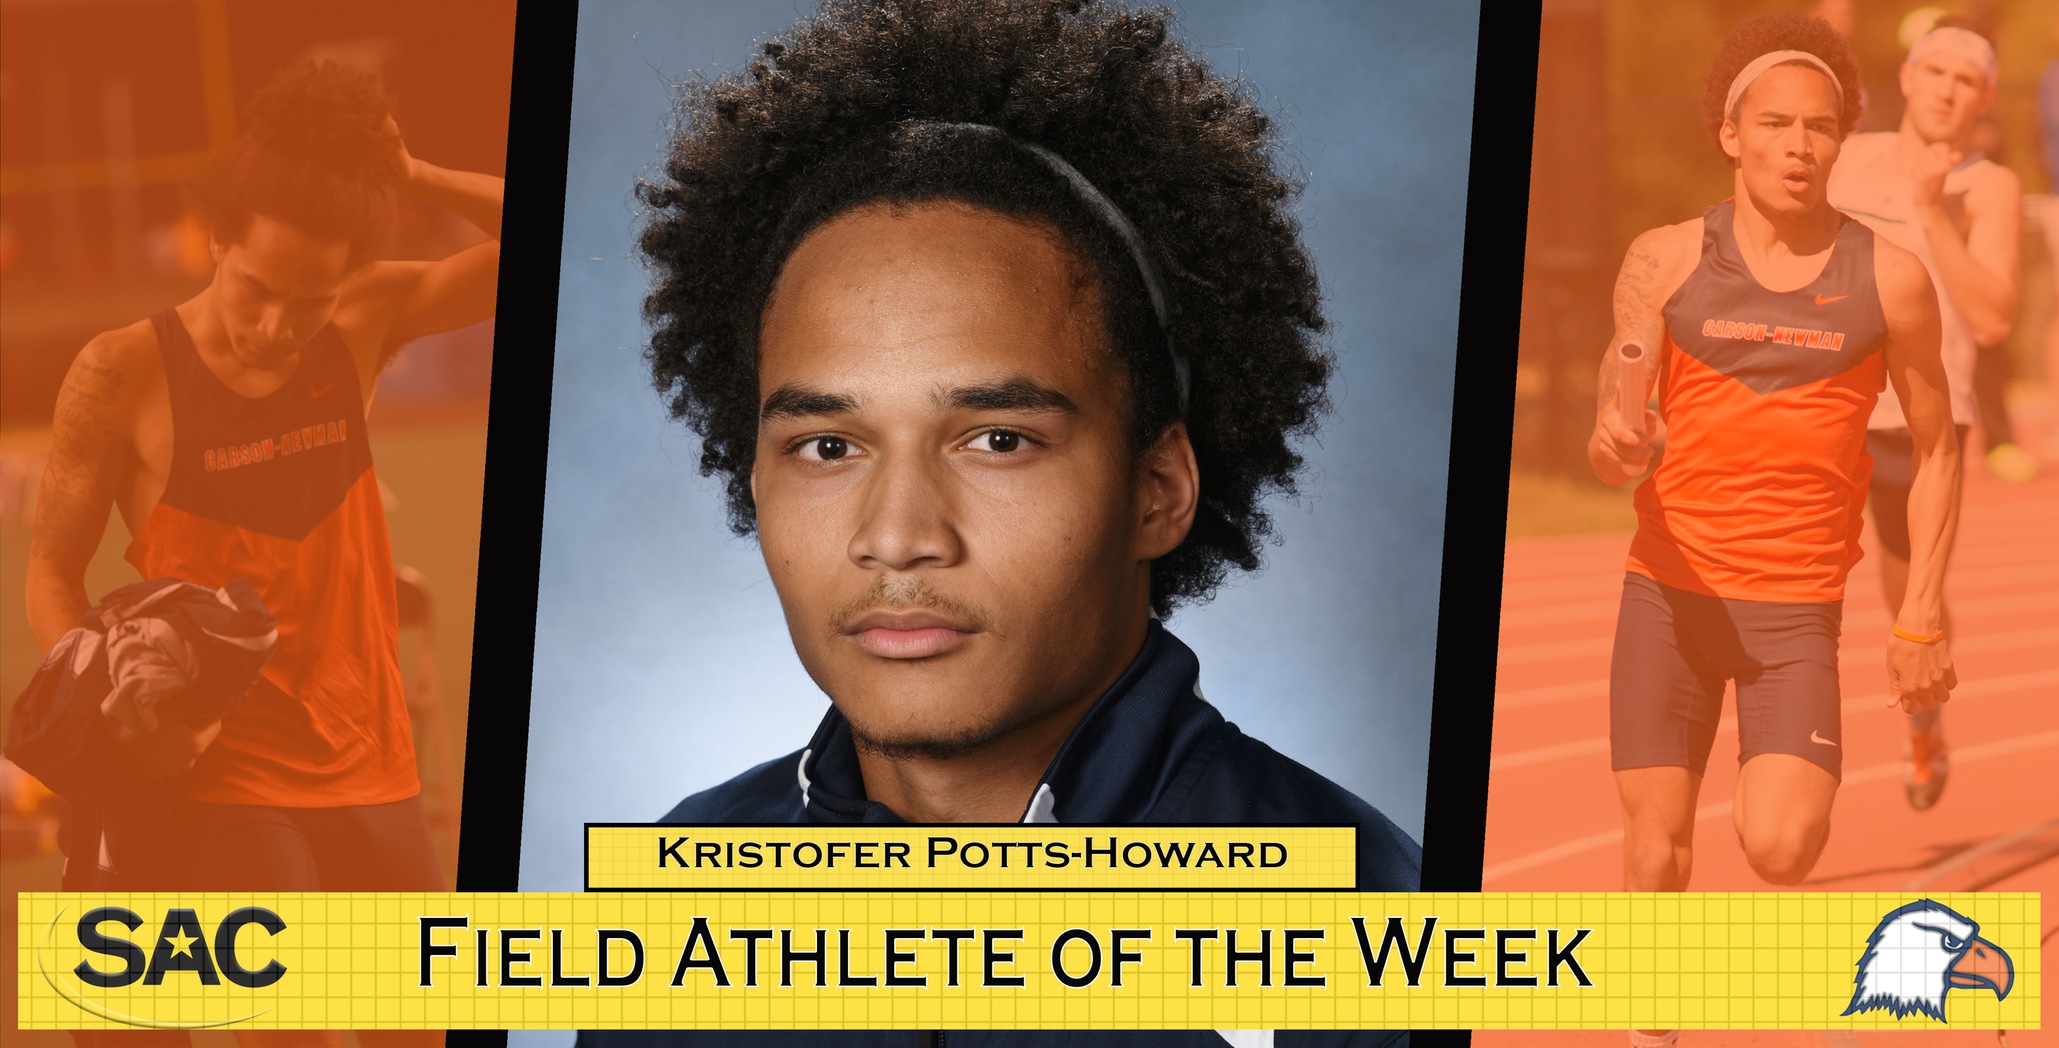 Potts-Howard tabbed SAC Field Athlete of the Week following stellar week